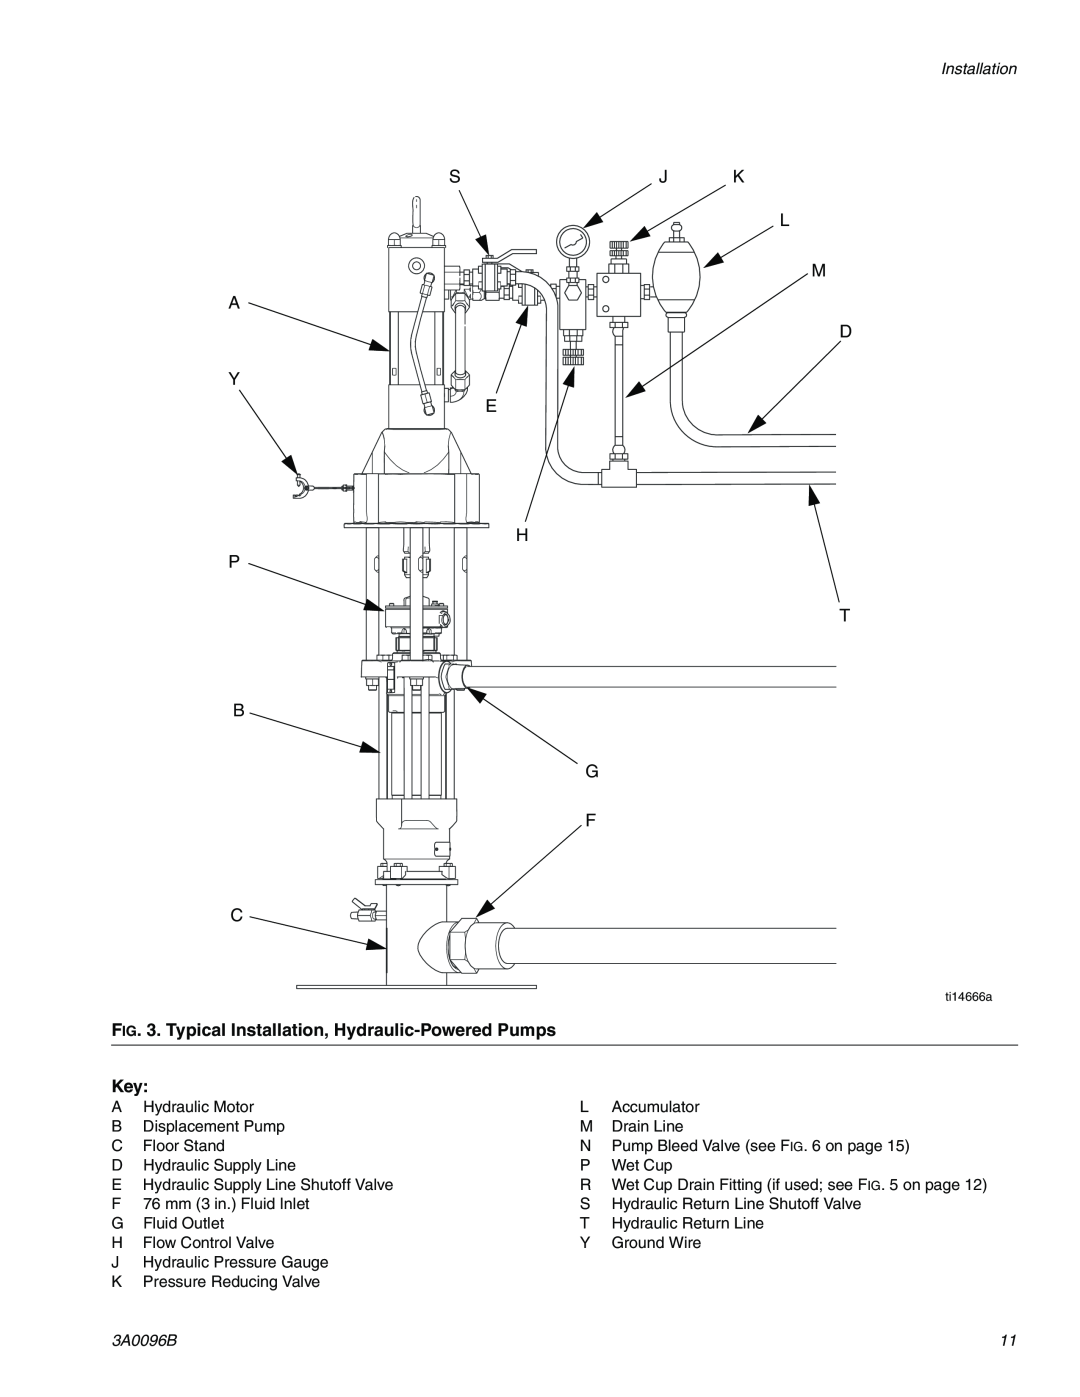 Graco 3A0096B A Y P B C, Sj K L M D E H T G F, Typical Installation, Hydraulic-Powered Pumps Key 